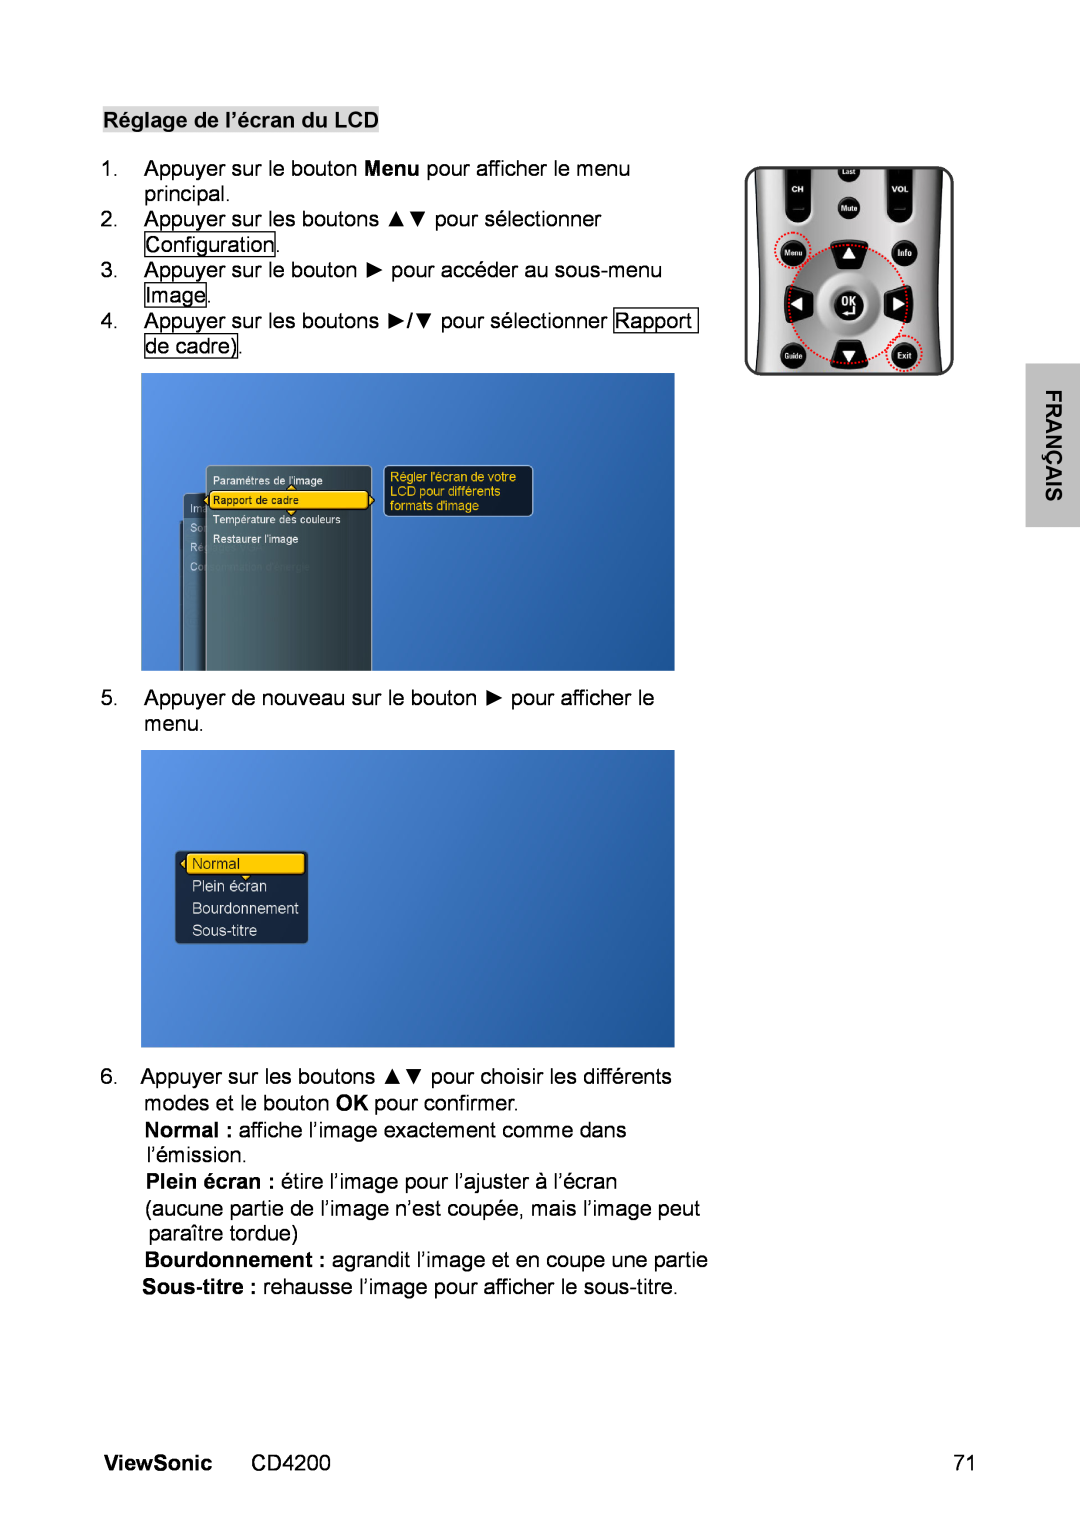 ViewSonic manual Réglage de l’écran du LCD, Français, ViewSonic CD4200 